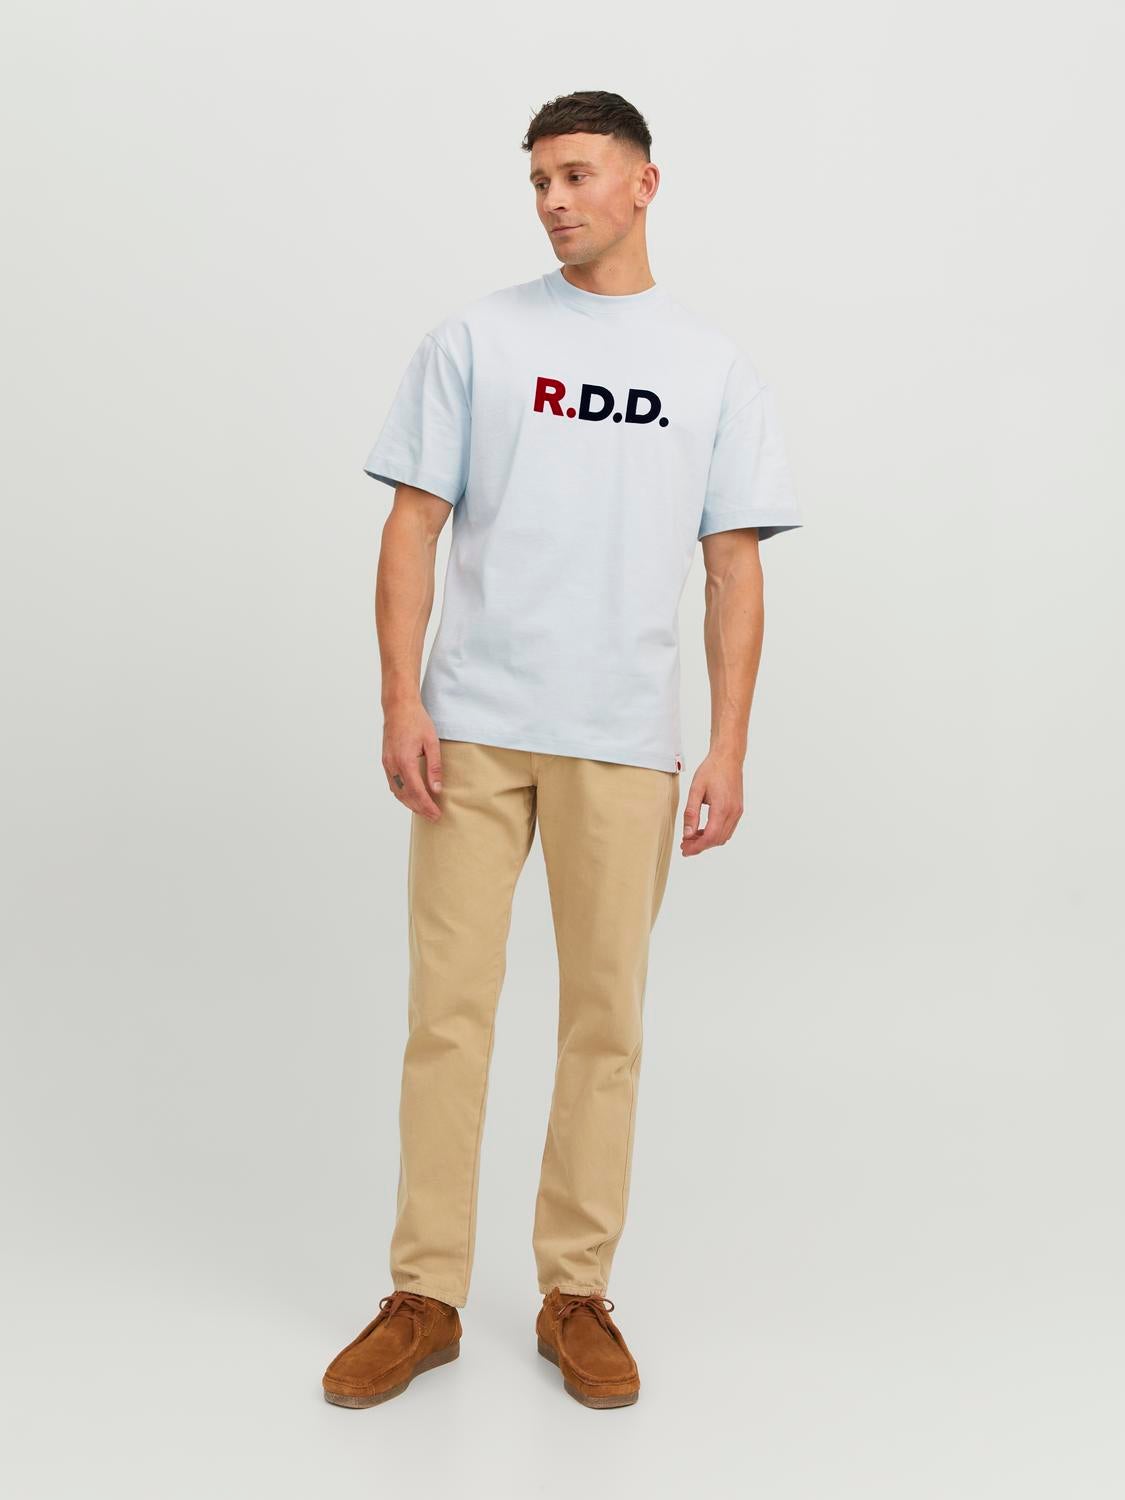 RDD Logo Rundhals T-shirt